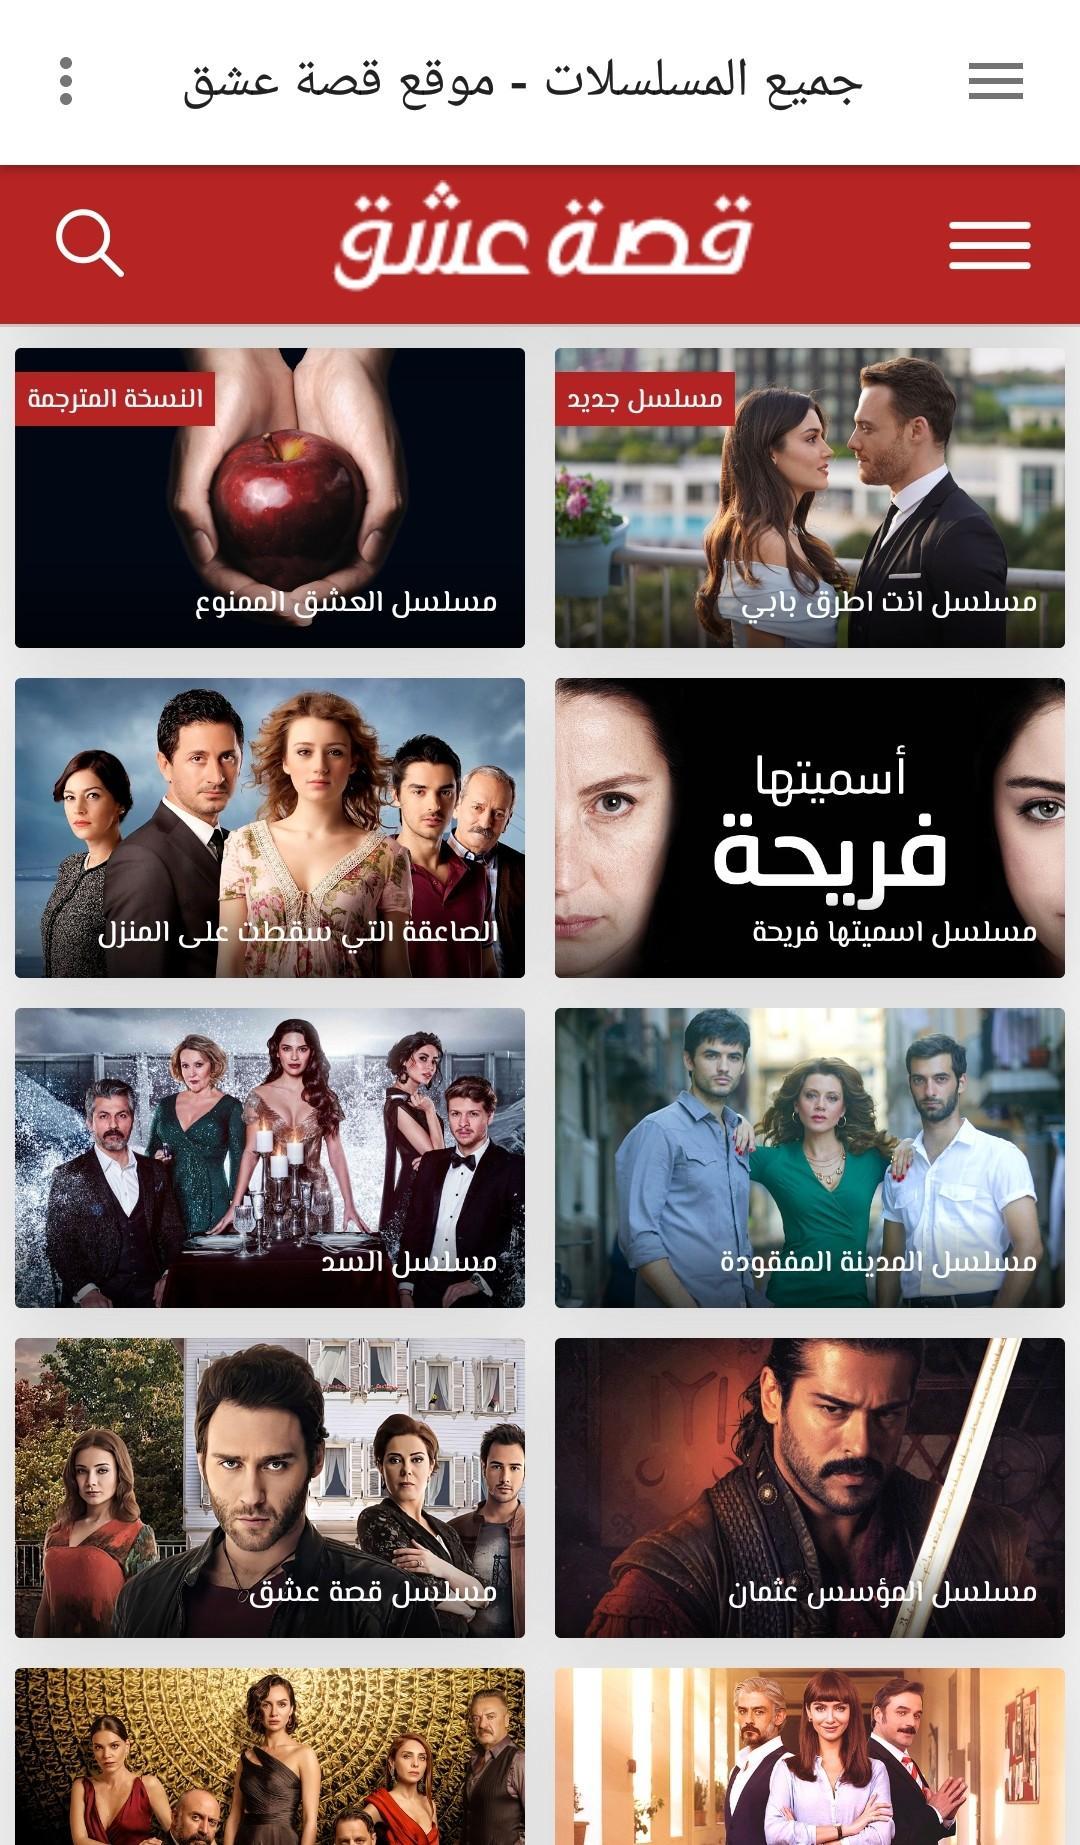 موقع قصة عشق" الأشهر عربياً ويضم فريقاً متكاملاً لترجمة الدراما التركية -  معلومات مباشر